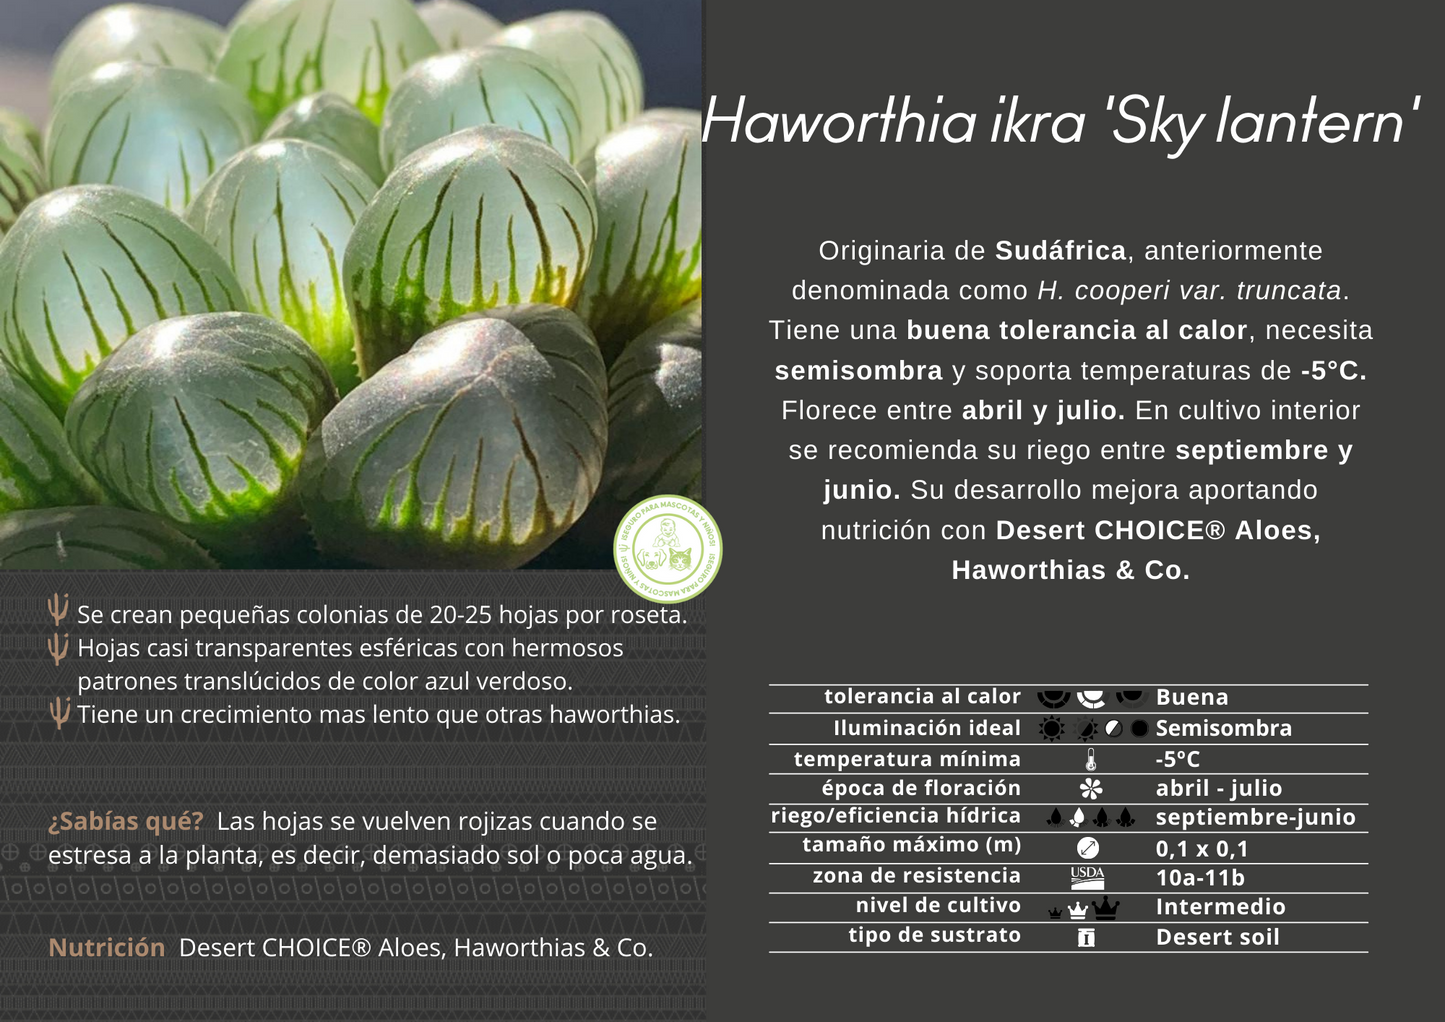 Haworthia ikra ‘Sky lantern’ (H. cooperi var. truncata) ‘Sky lantern’